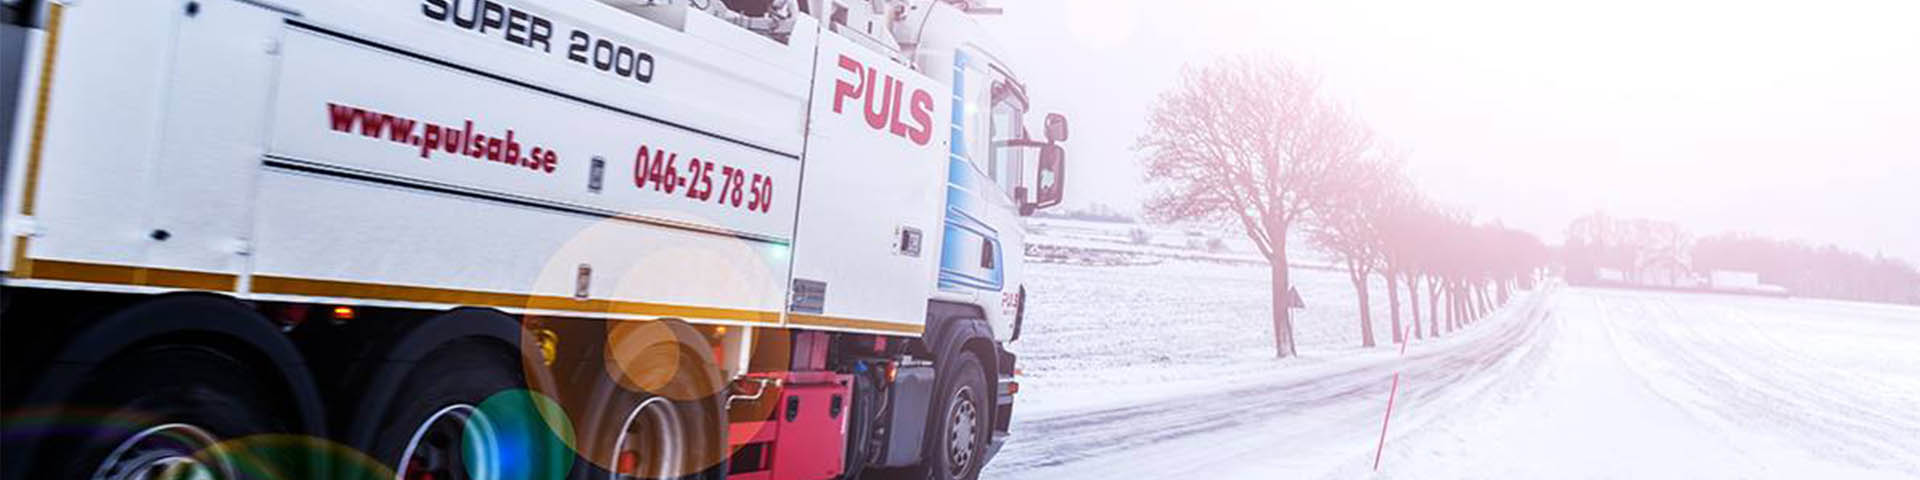 Puls AB lastbil kör på en snöig väg med träd på sidan